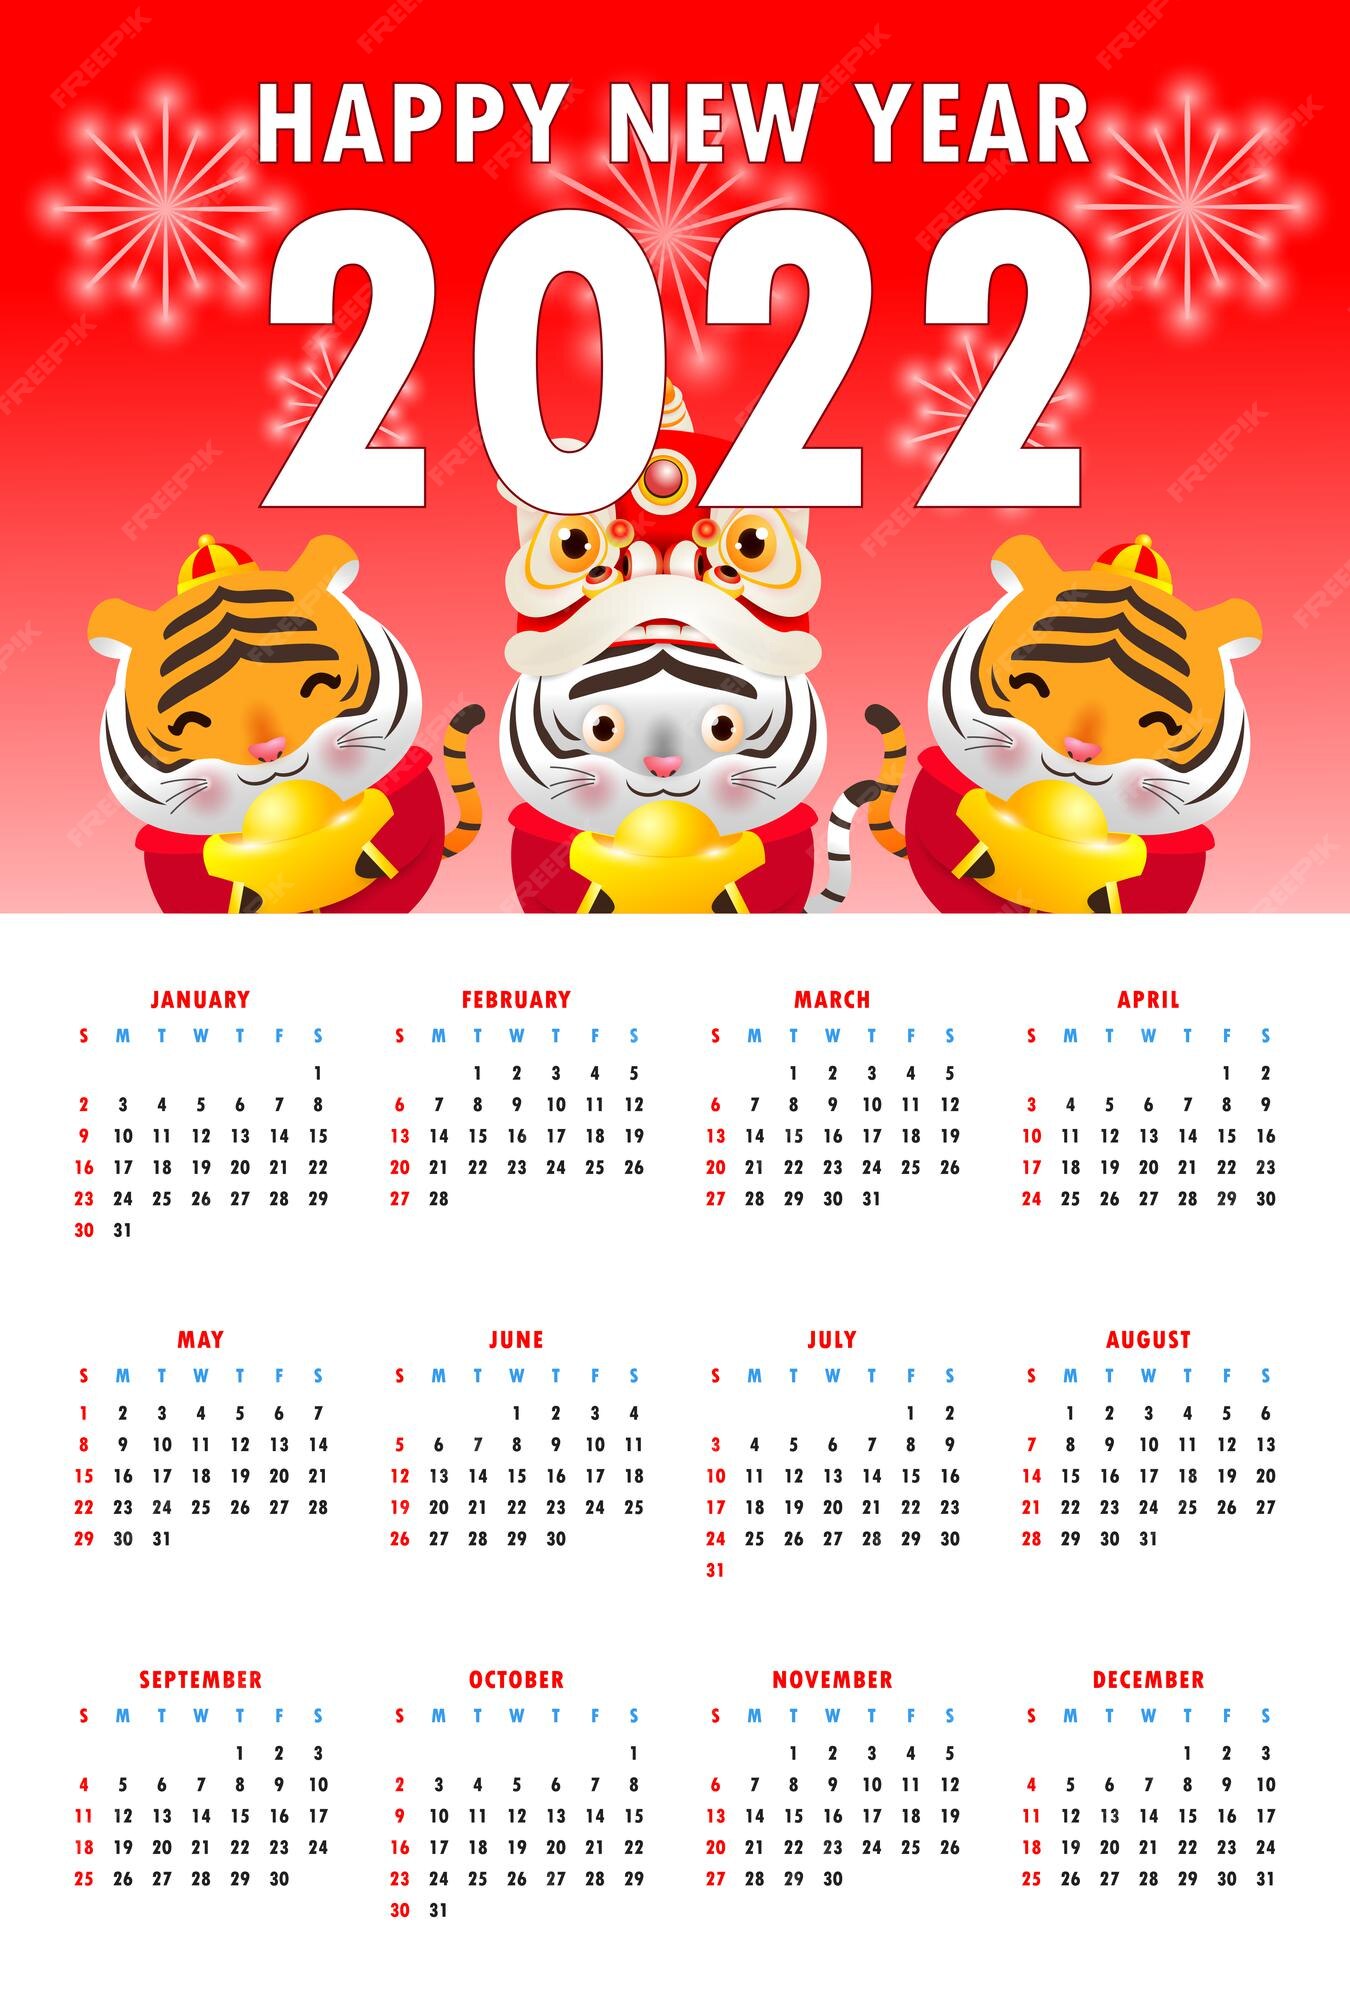  NUOBESTY Calendario chino 2022, 1 unidad, calendario diario del  año del tigre 2022, calendario chino tradicional